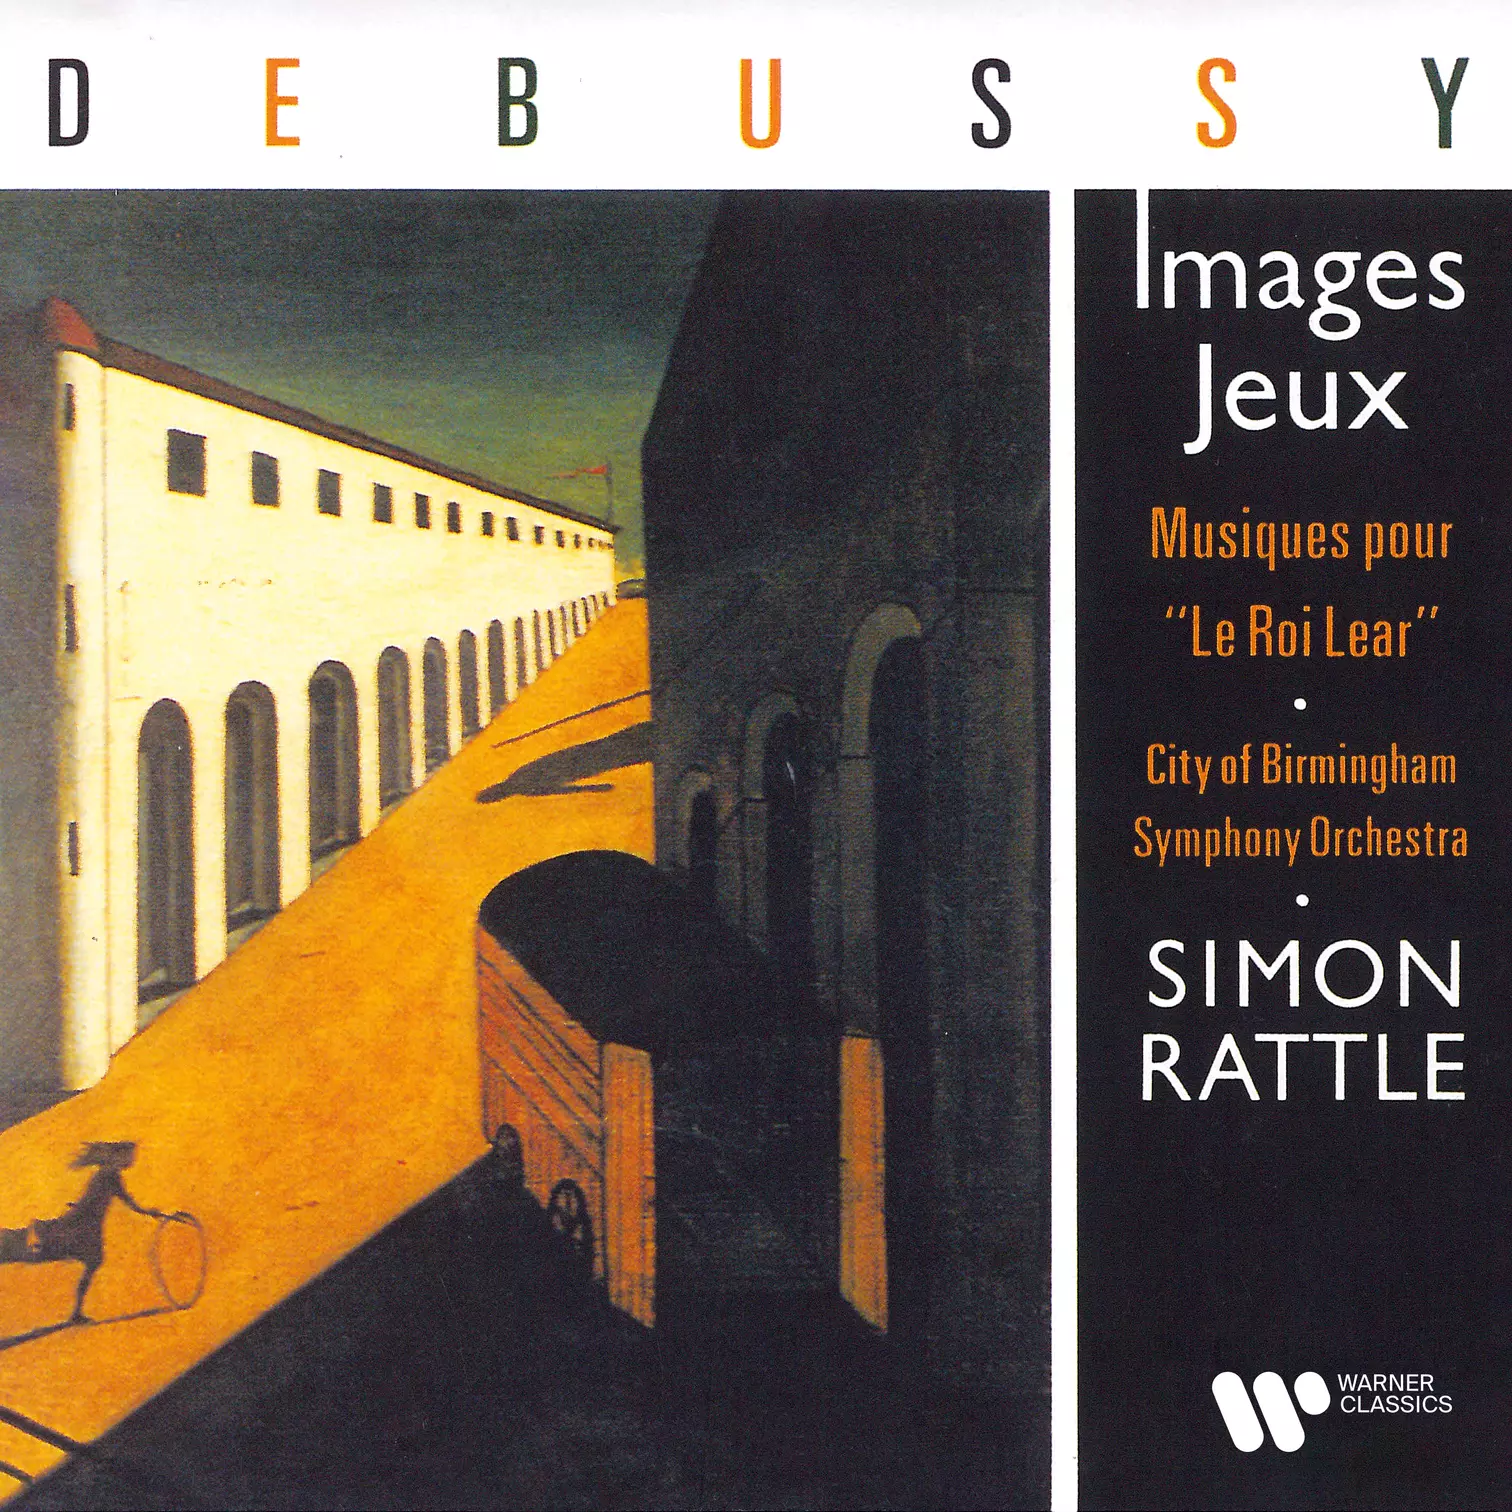 Debussy: Images, Jeux & Musiques pour "Le roi Lear"